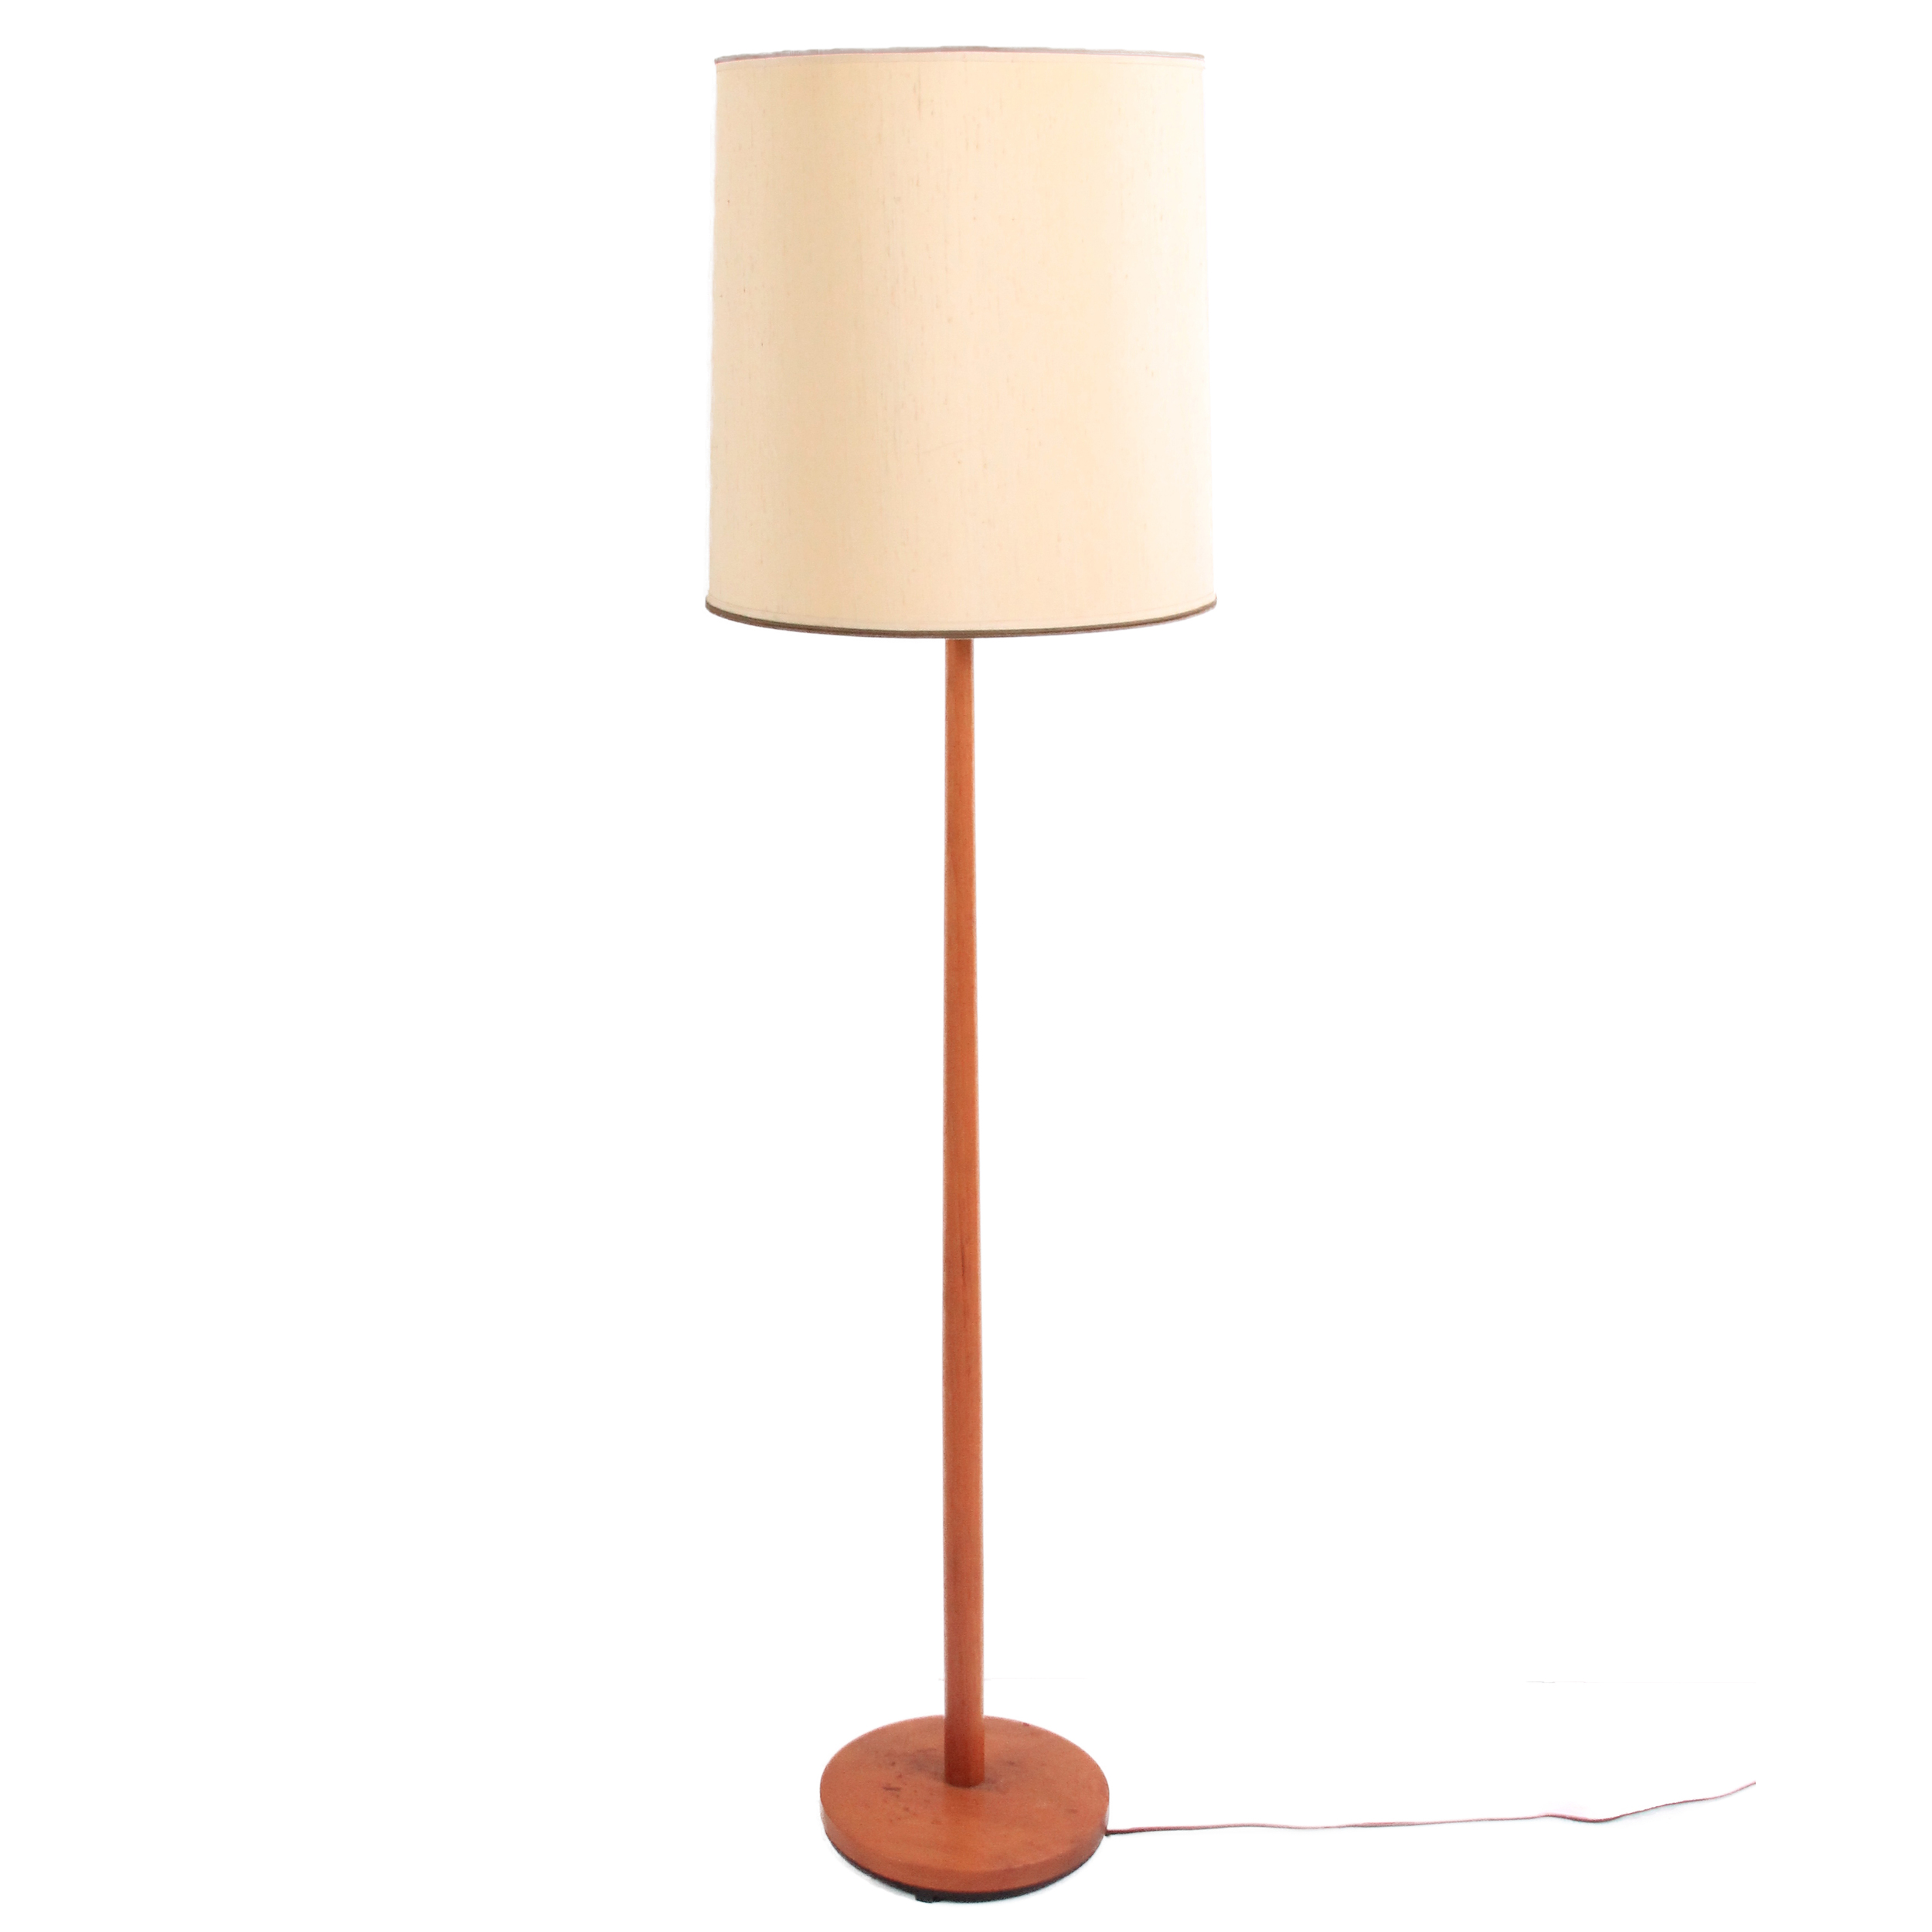 Vintage Mid Century Modern Teak Floor Lamp